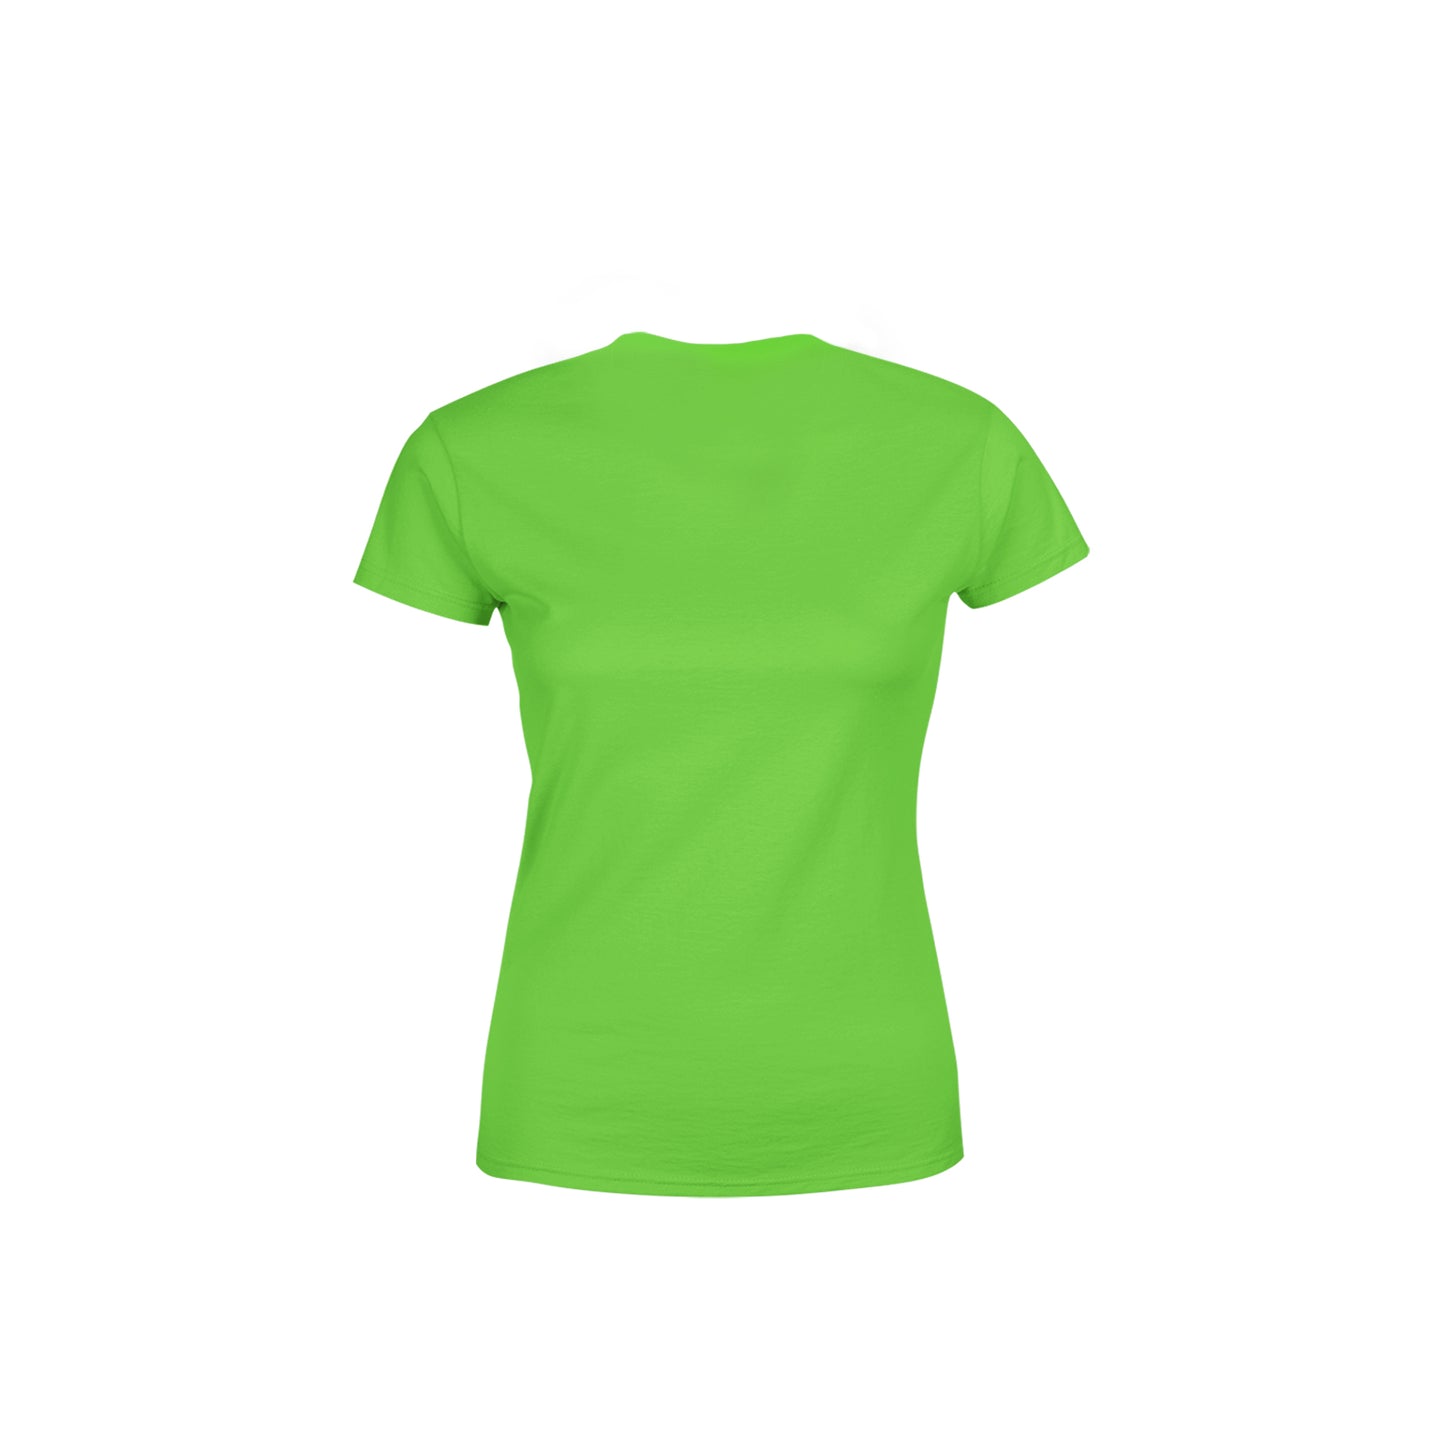 44 Number Women's T-Shirt (Liril Green)